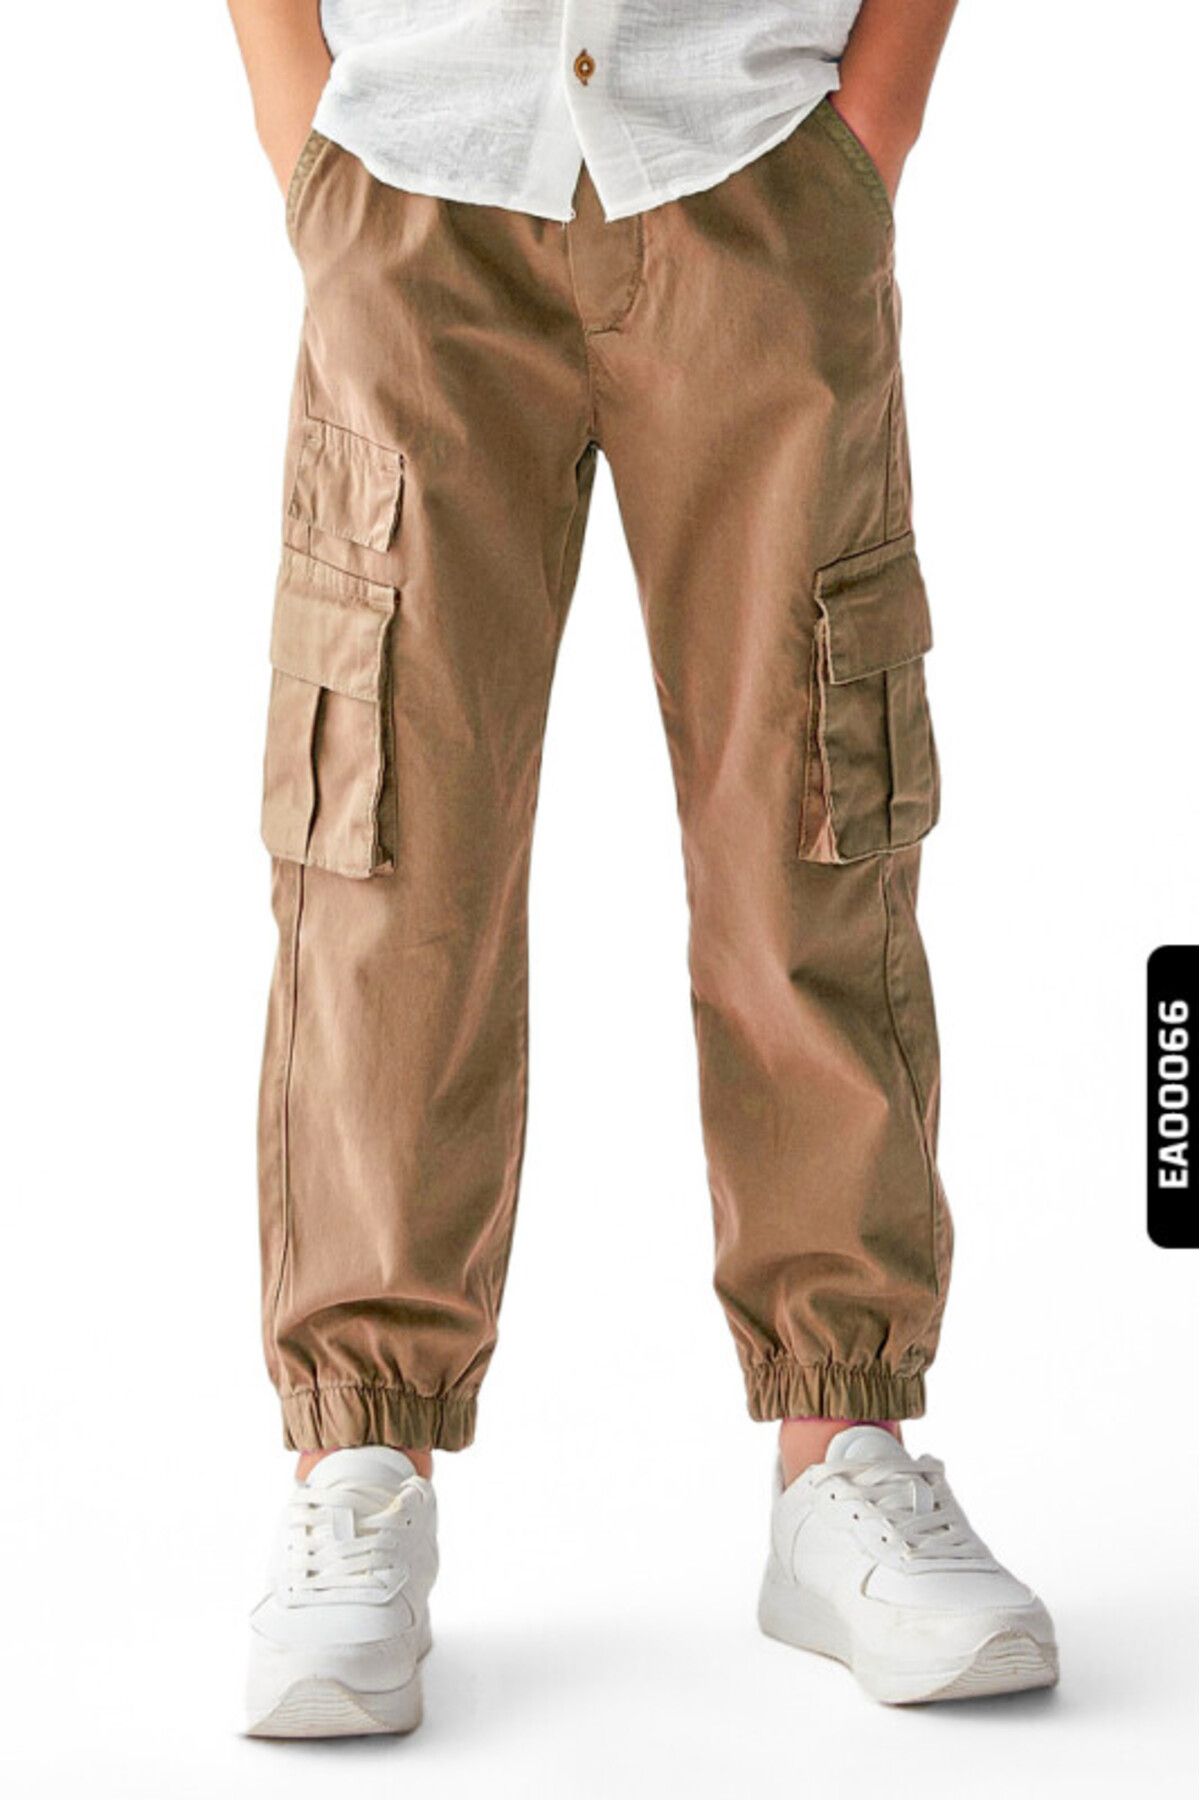 Nk Kids Kargo Modelli Bağcıklı Kemerli Düz Renkli  Erkek Çocuk Pantolon 8-14 Yaş 66706